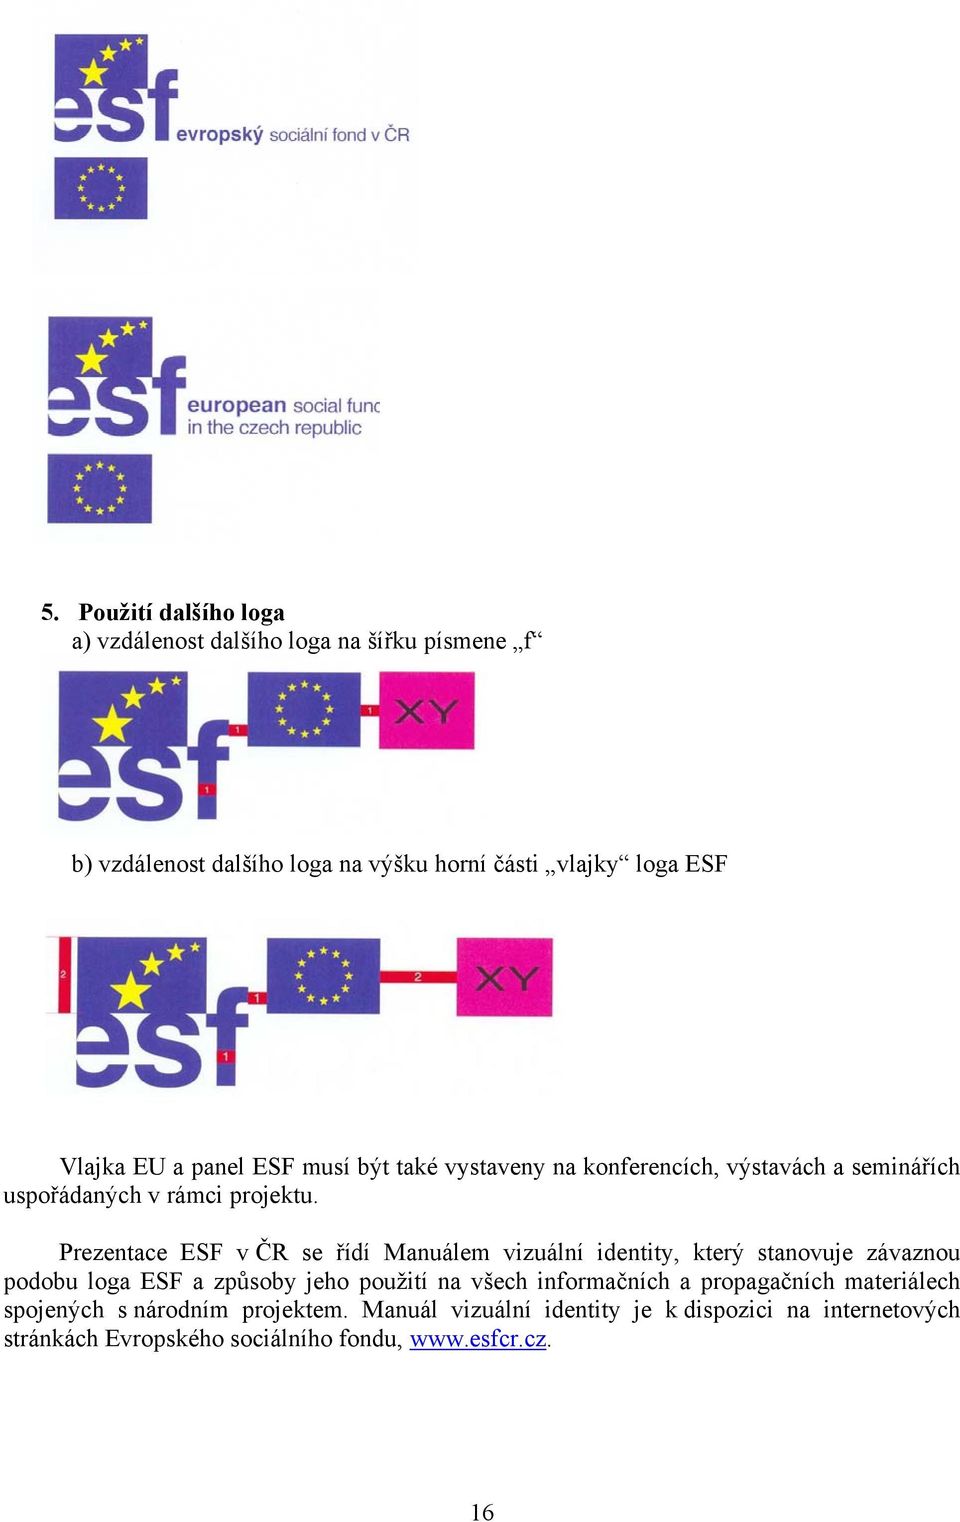 Prezentace ESF v ČR se řídí Manuálem vizuální identity, který stanovuje závaznou podobu loga ESF a způsoby jeho použití na všech